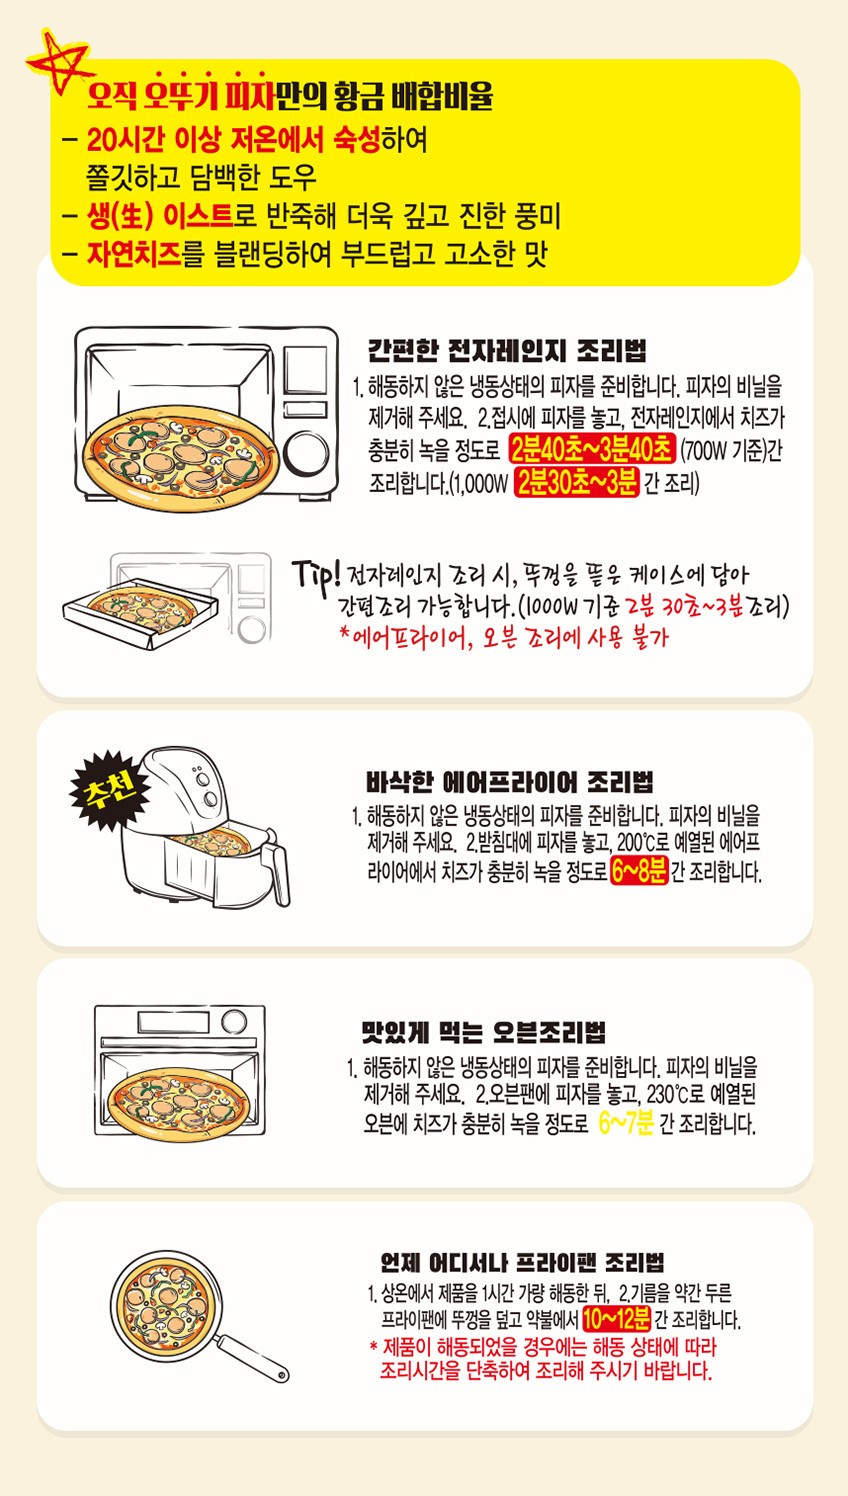 韓國食品-[오뚜기] 크런치불고기피자 180g